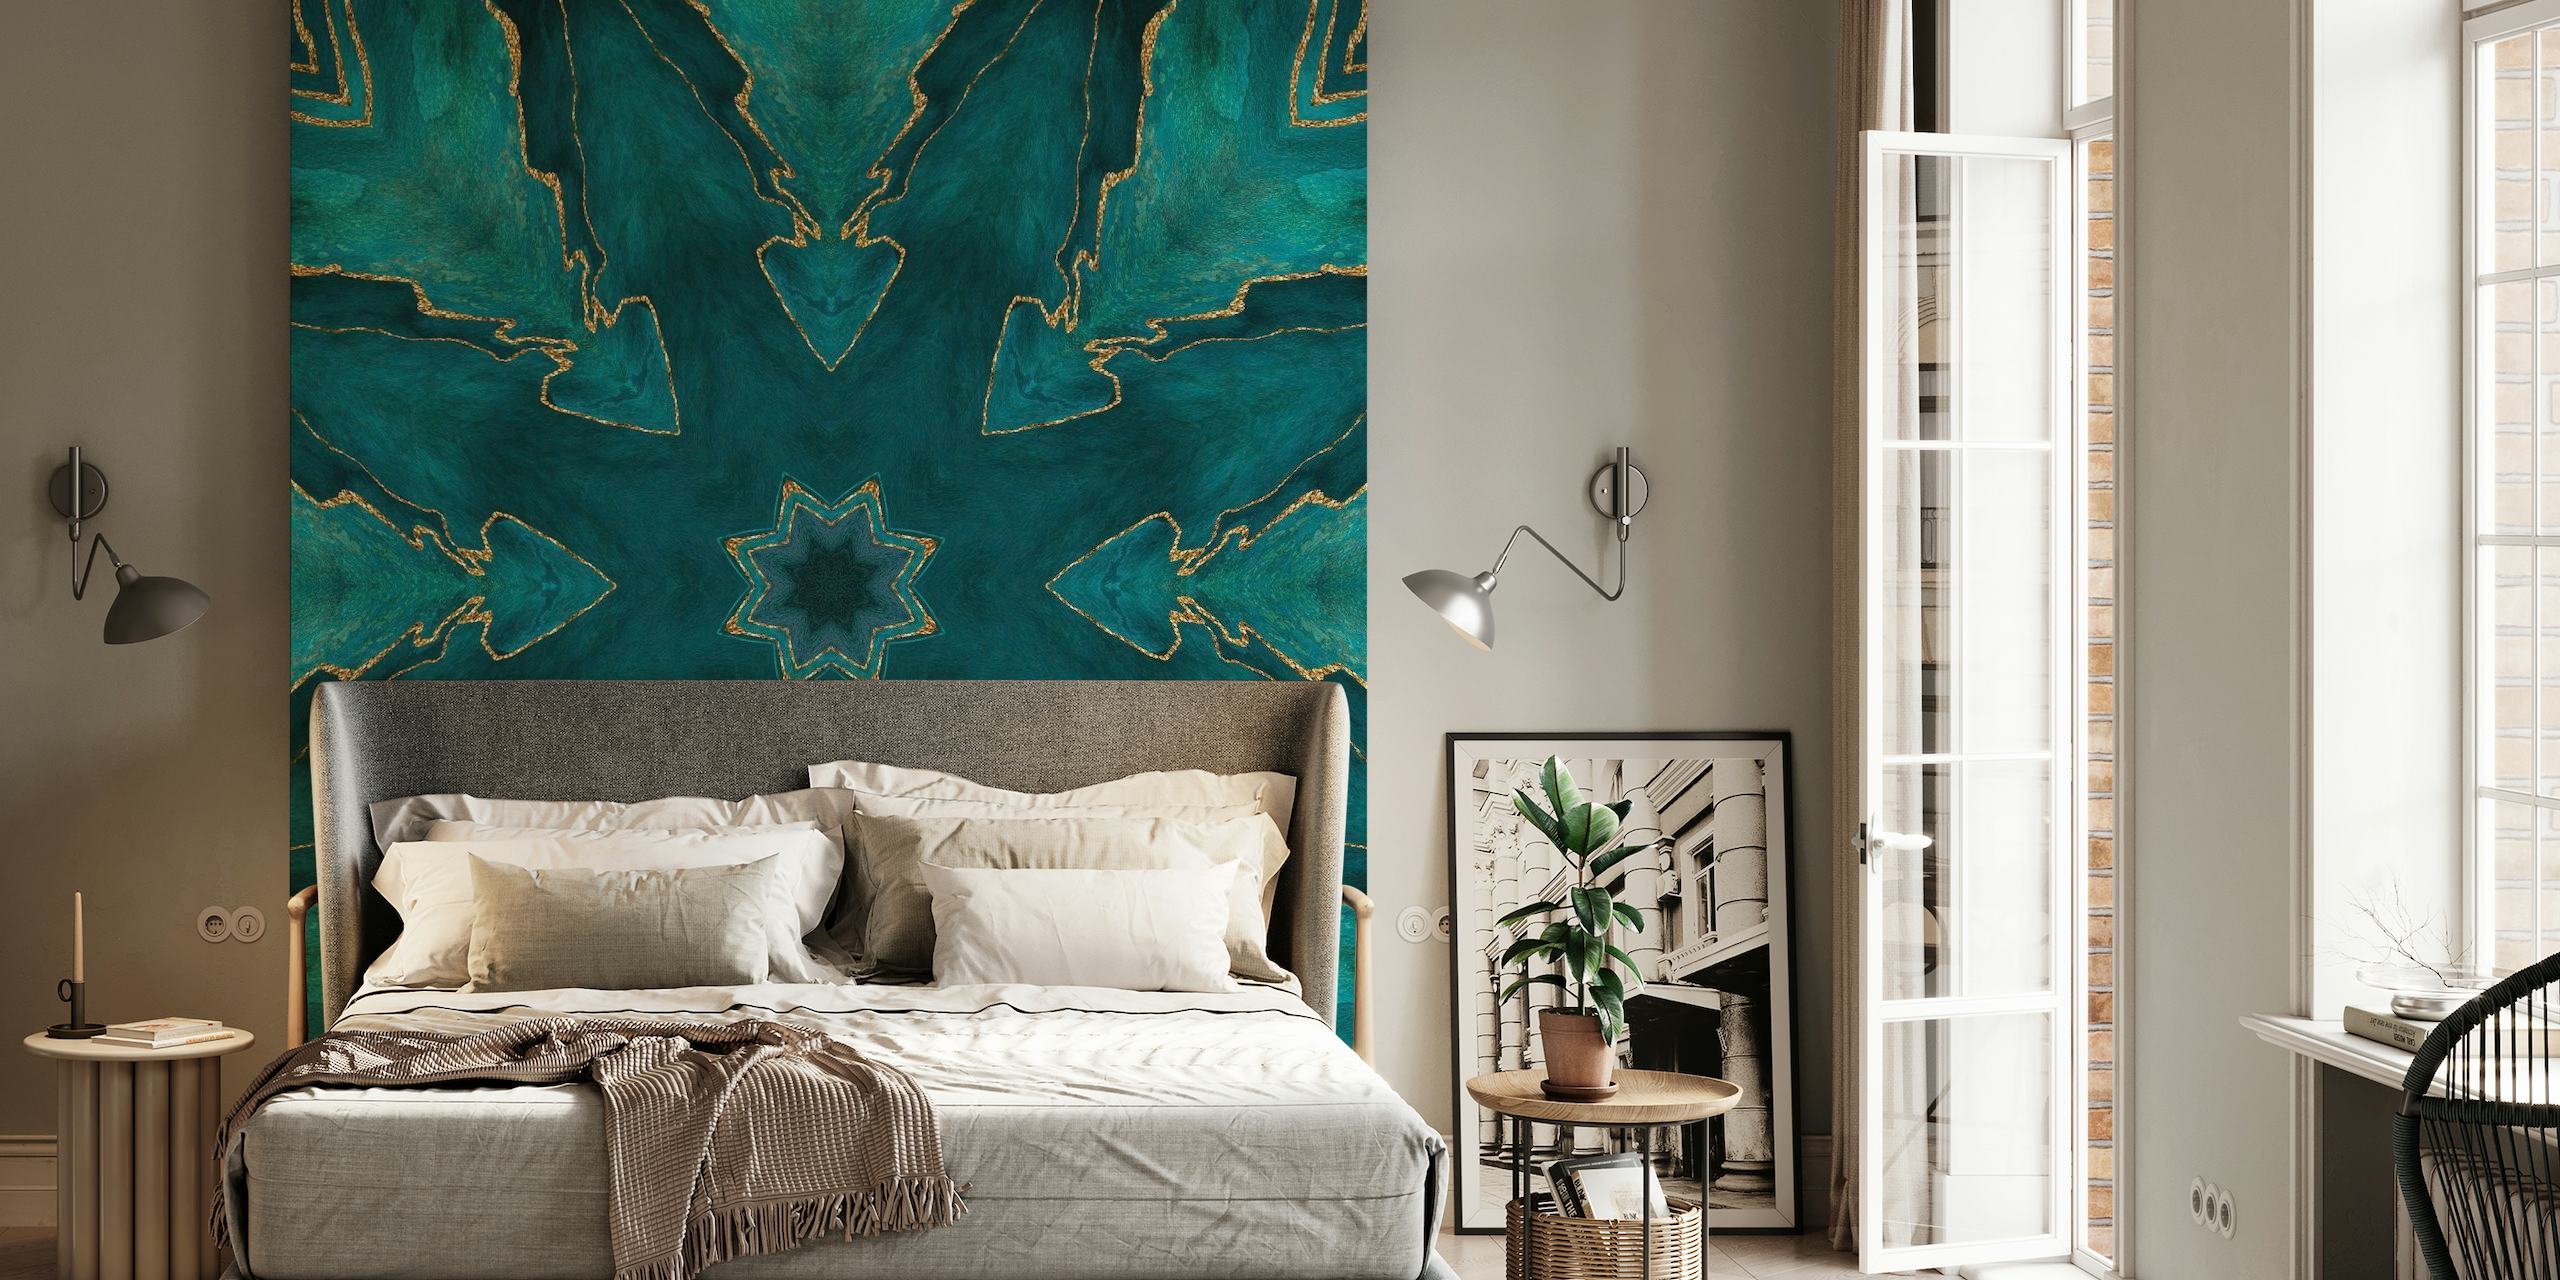 Fotomural vinílico de parede luxuoso com padrão de azulejo de mármore turquesa e dourado